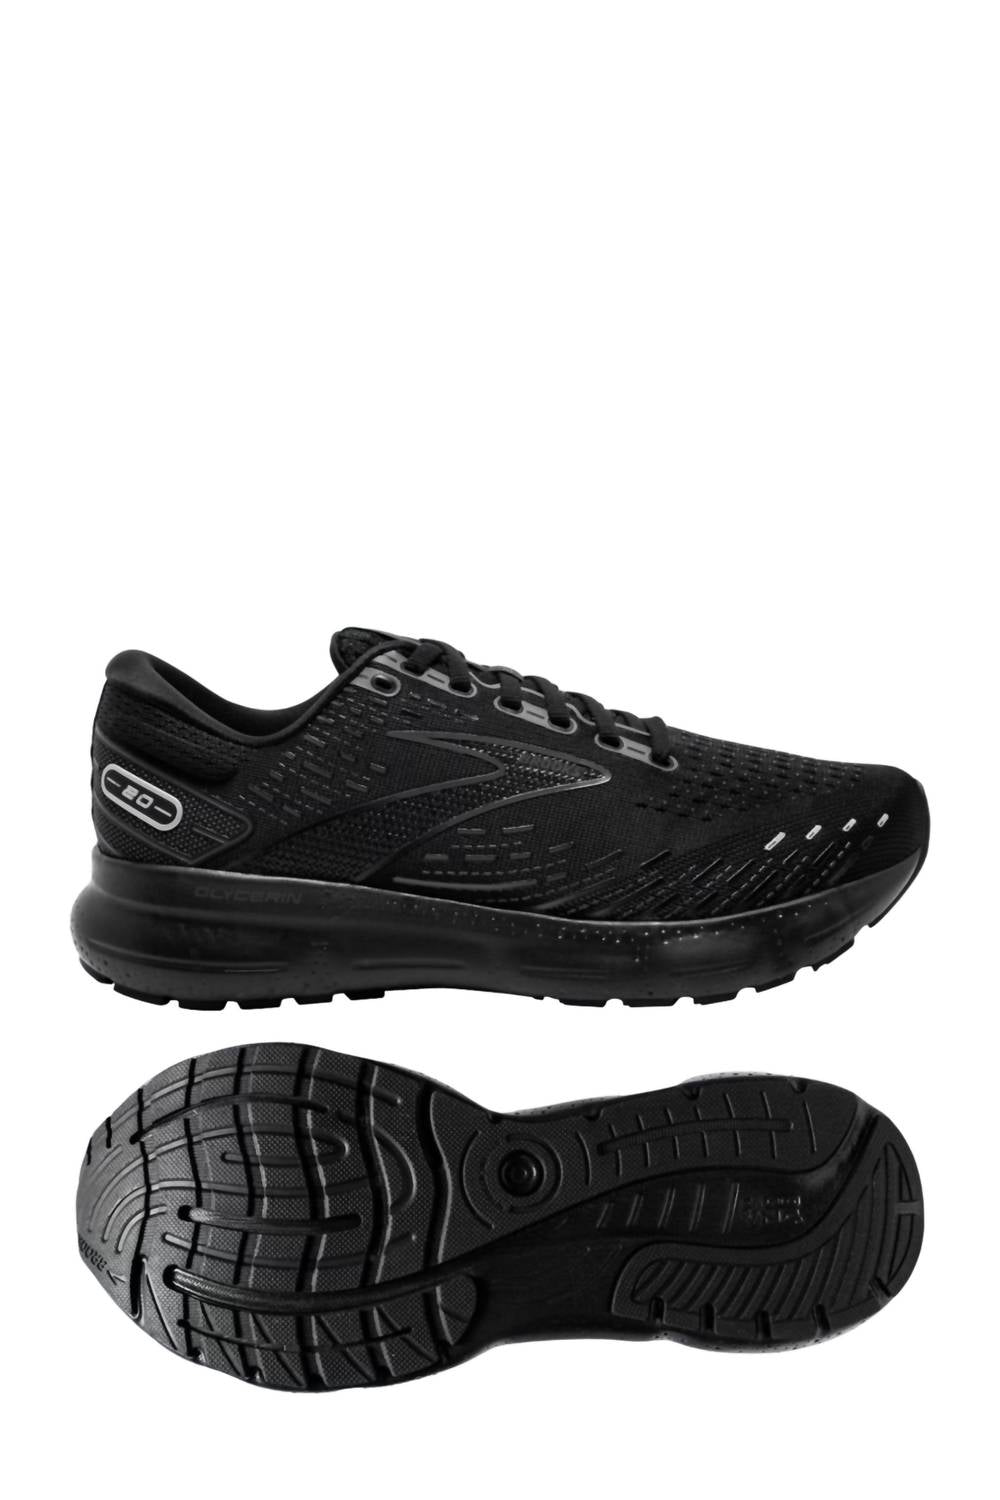 Brooks Men's Glycerin 20 Running Shoes - D/medium Width In Black/black/ebony